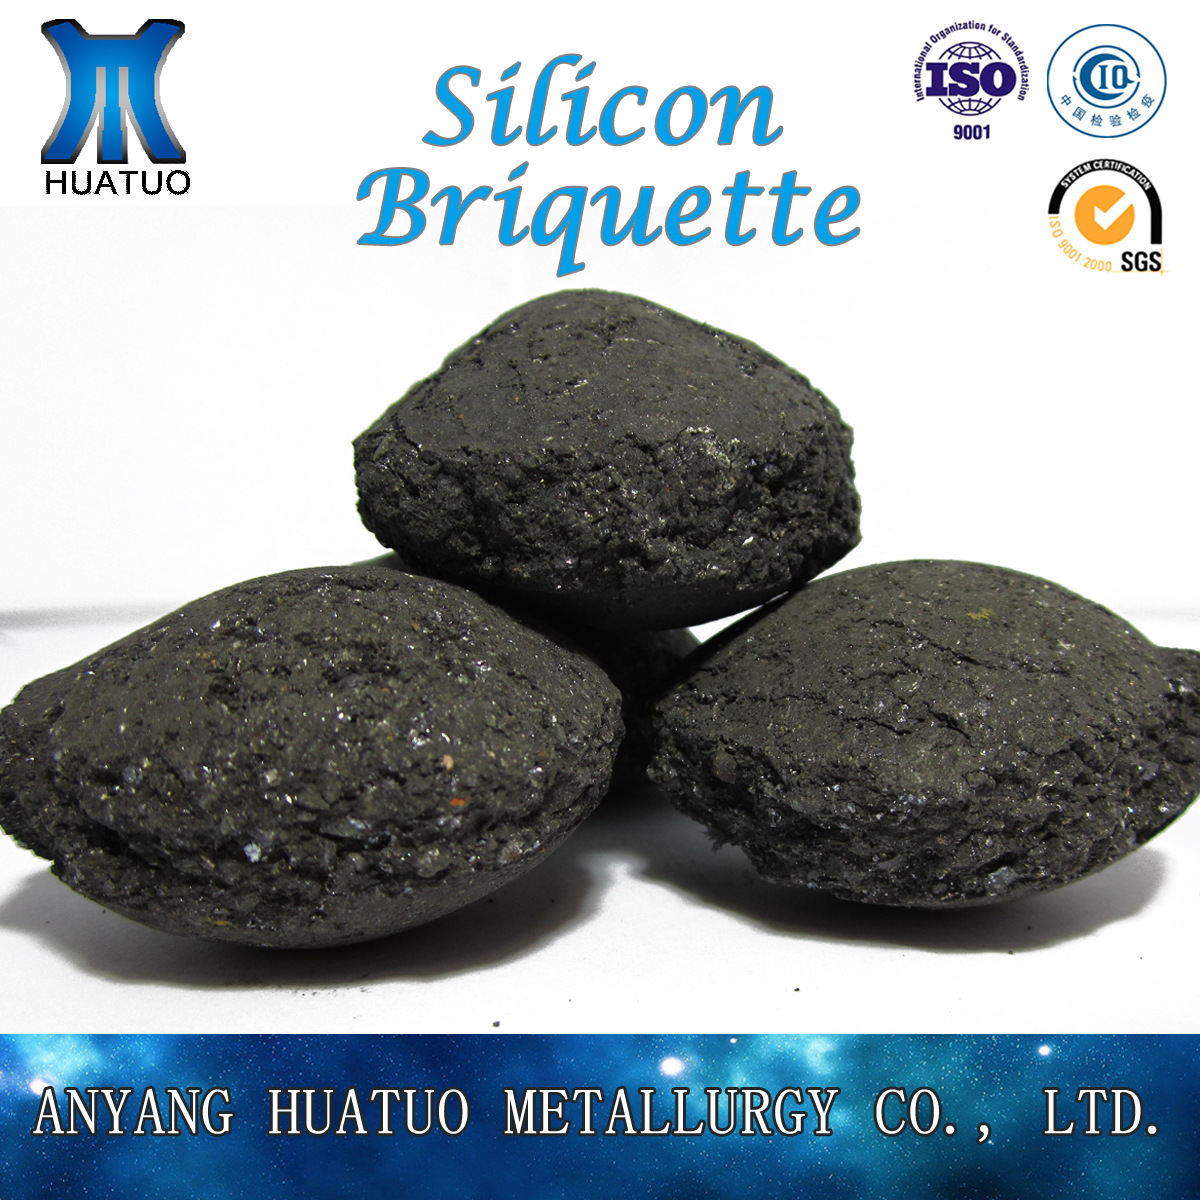 Silicon Briquette (2)